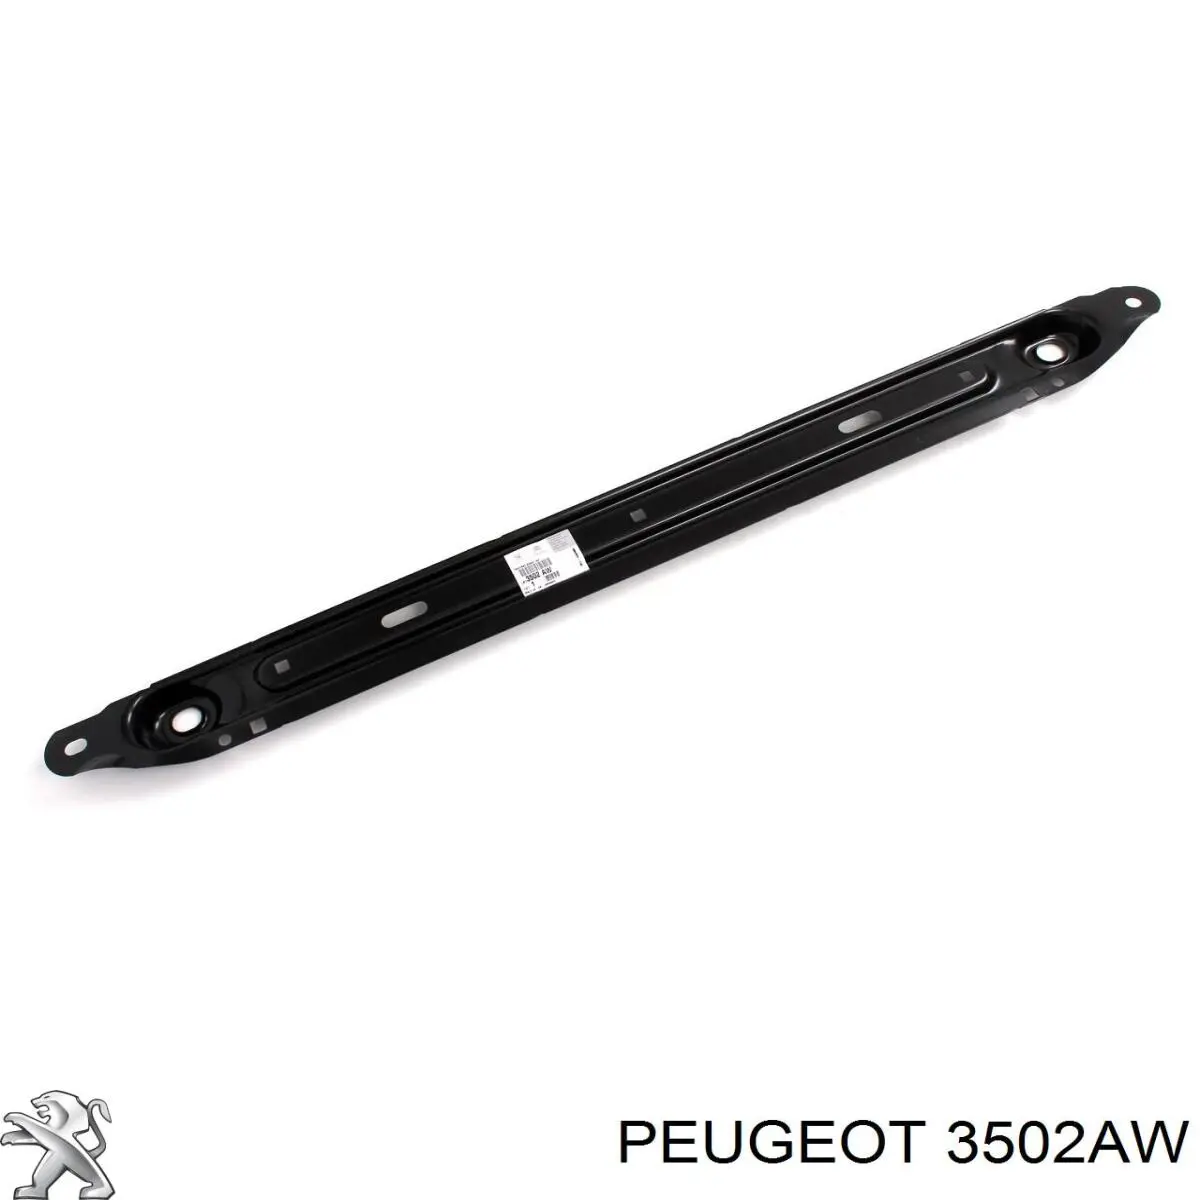 00003502AW Peugeot/Citroen suporte inferior do radiador (painel de montagem de fixação das luzes)